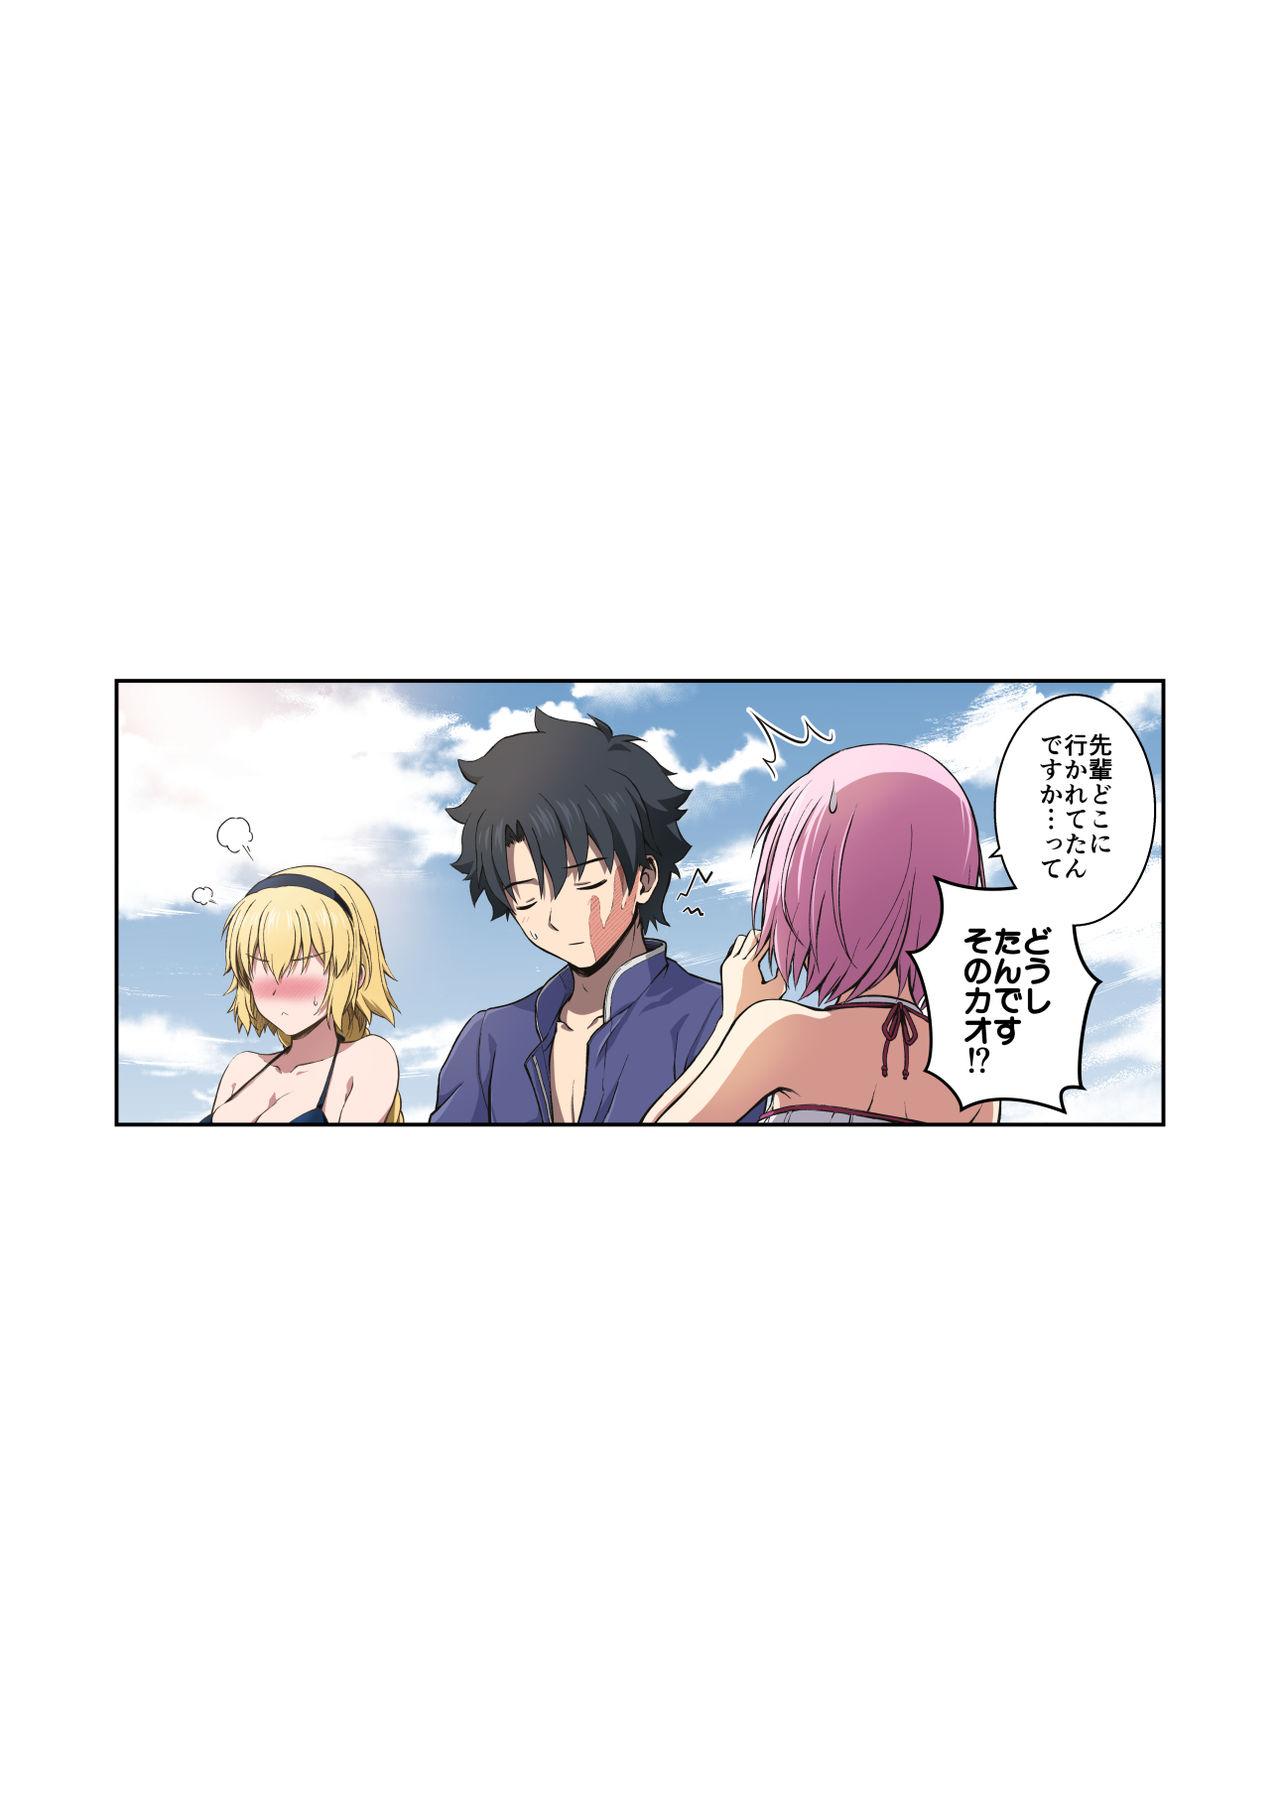 『Jeanne to Natsu no Umi』 Omake Manga 4